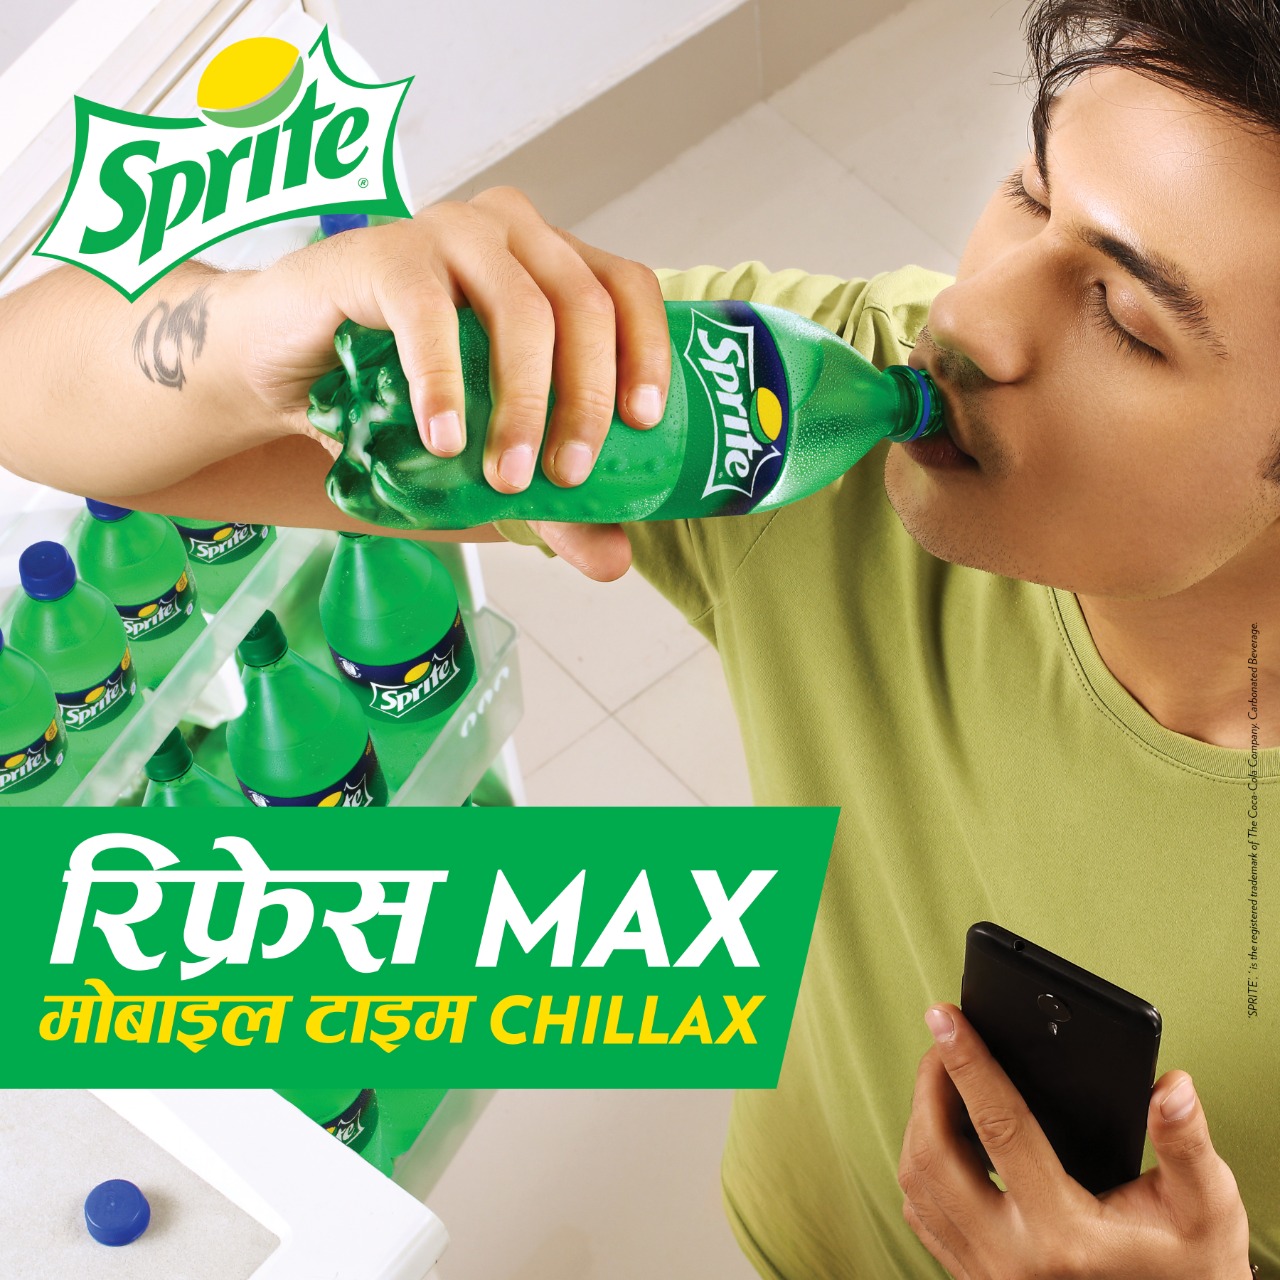 Sprite launches "Fresh Max, Mobile Time Chillax" campaign